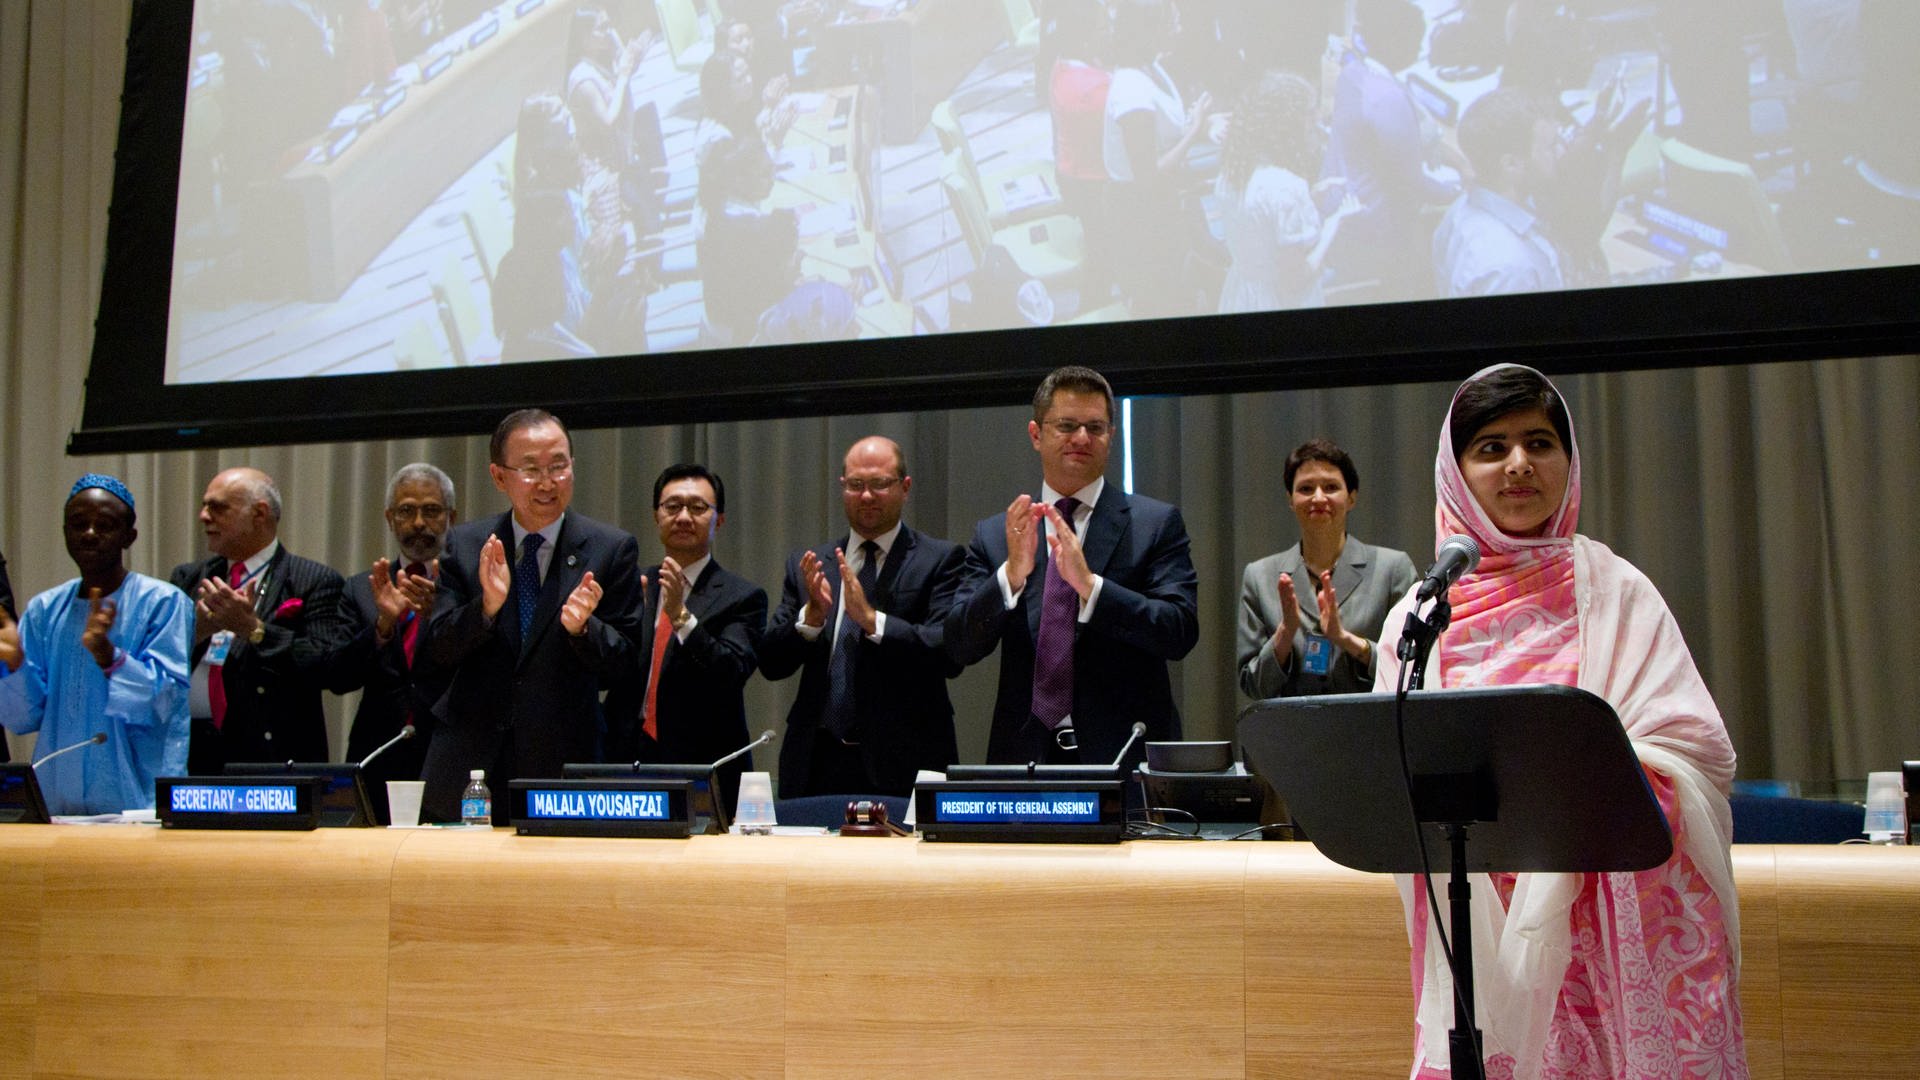 Nach der Rede von Malala über das Recht aller Kinder auf Bildung stehen die Menschen auf und klatschen Beifall.